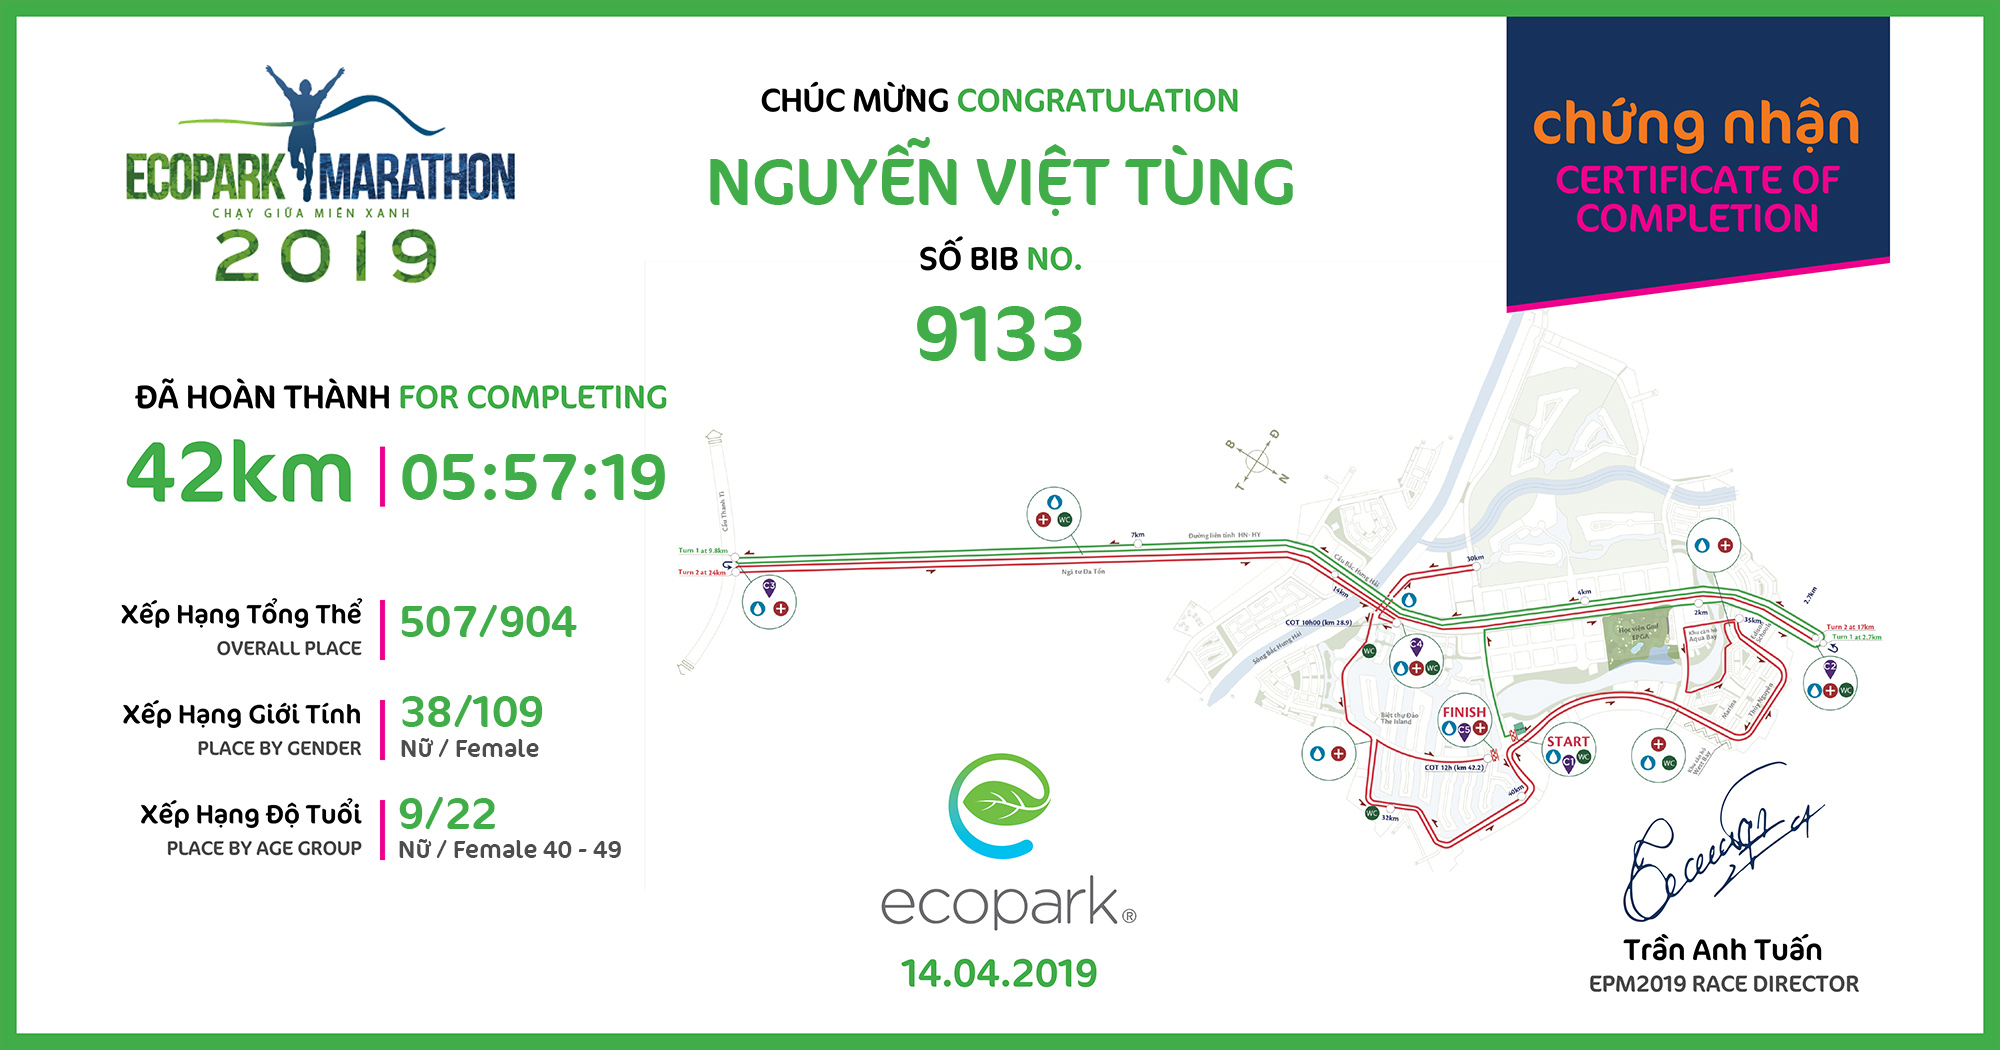 9133 - Nguyễn Việt Tùng